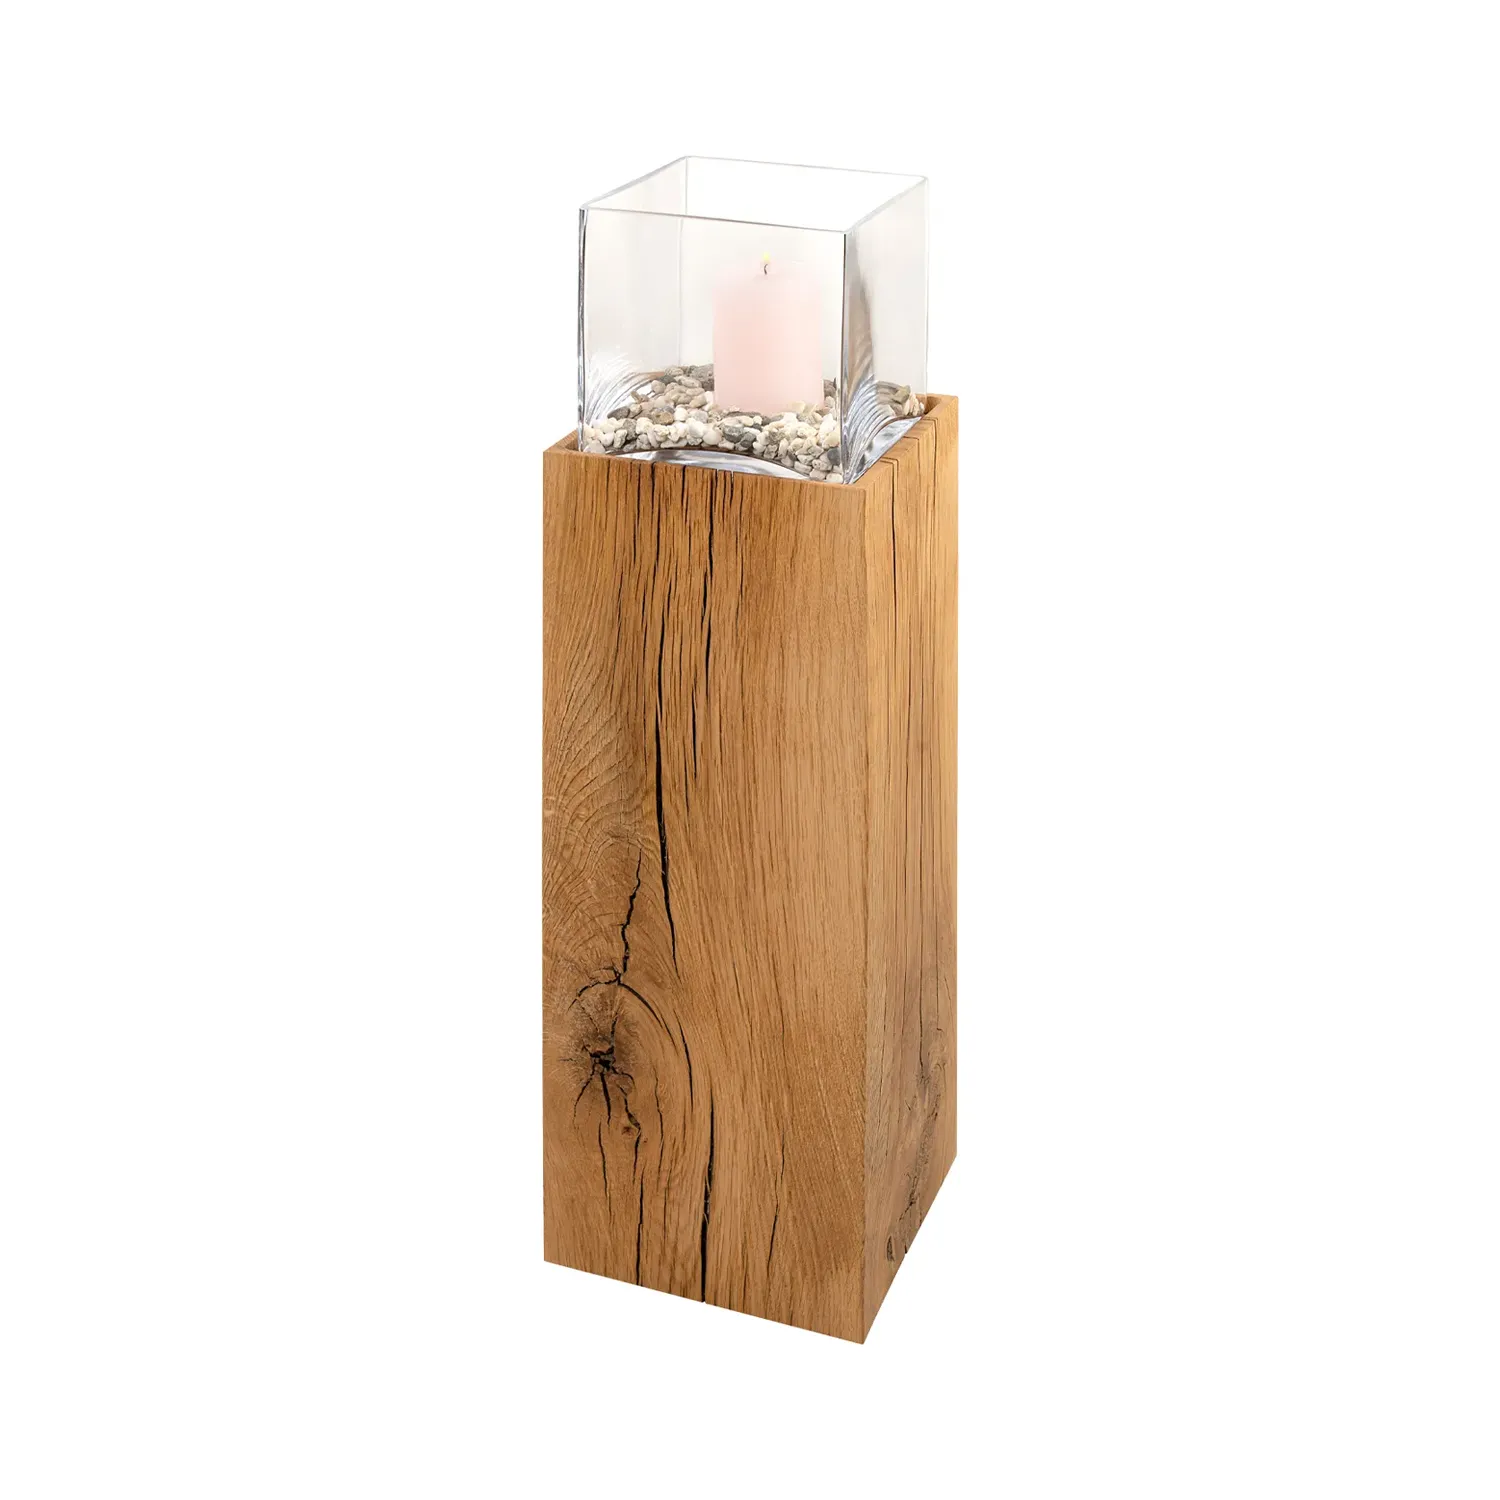 Holzsäule aus Eiche mit transparentem, viereckigem Windlicht und Kerze auf Steinen